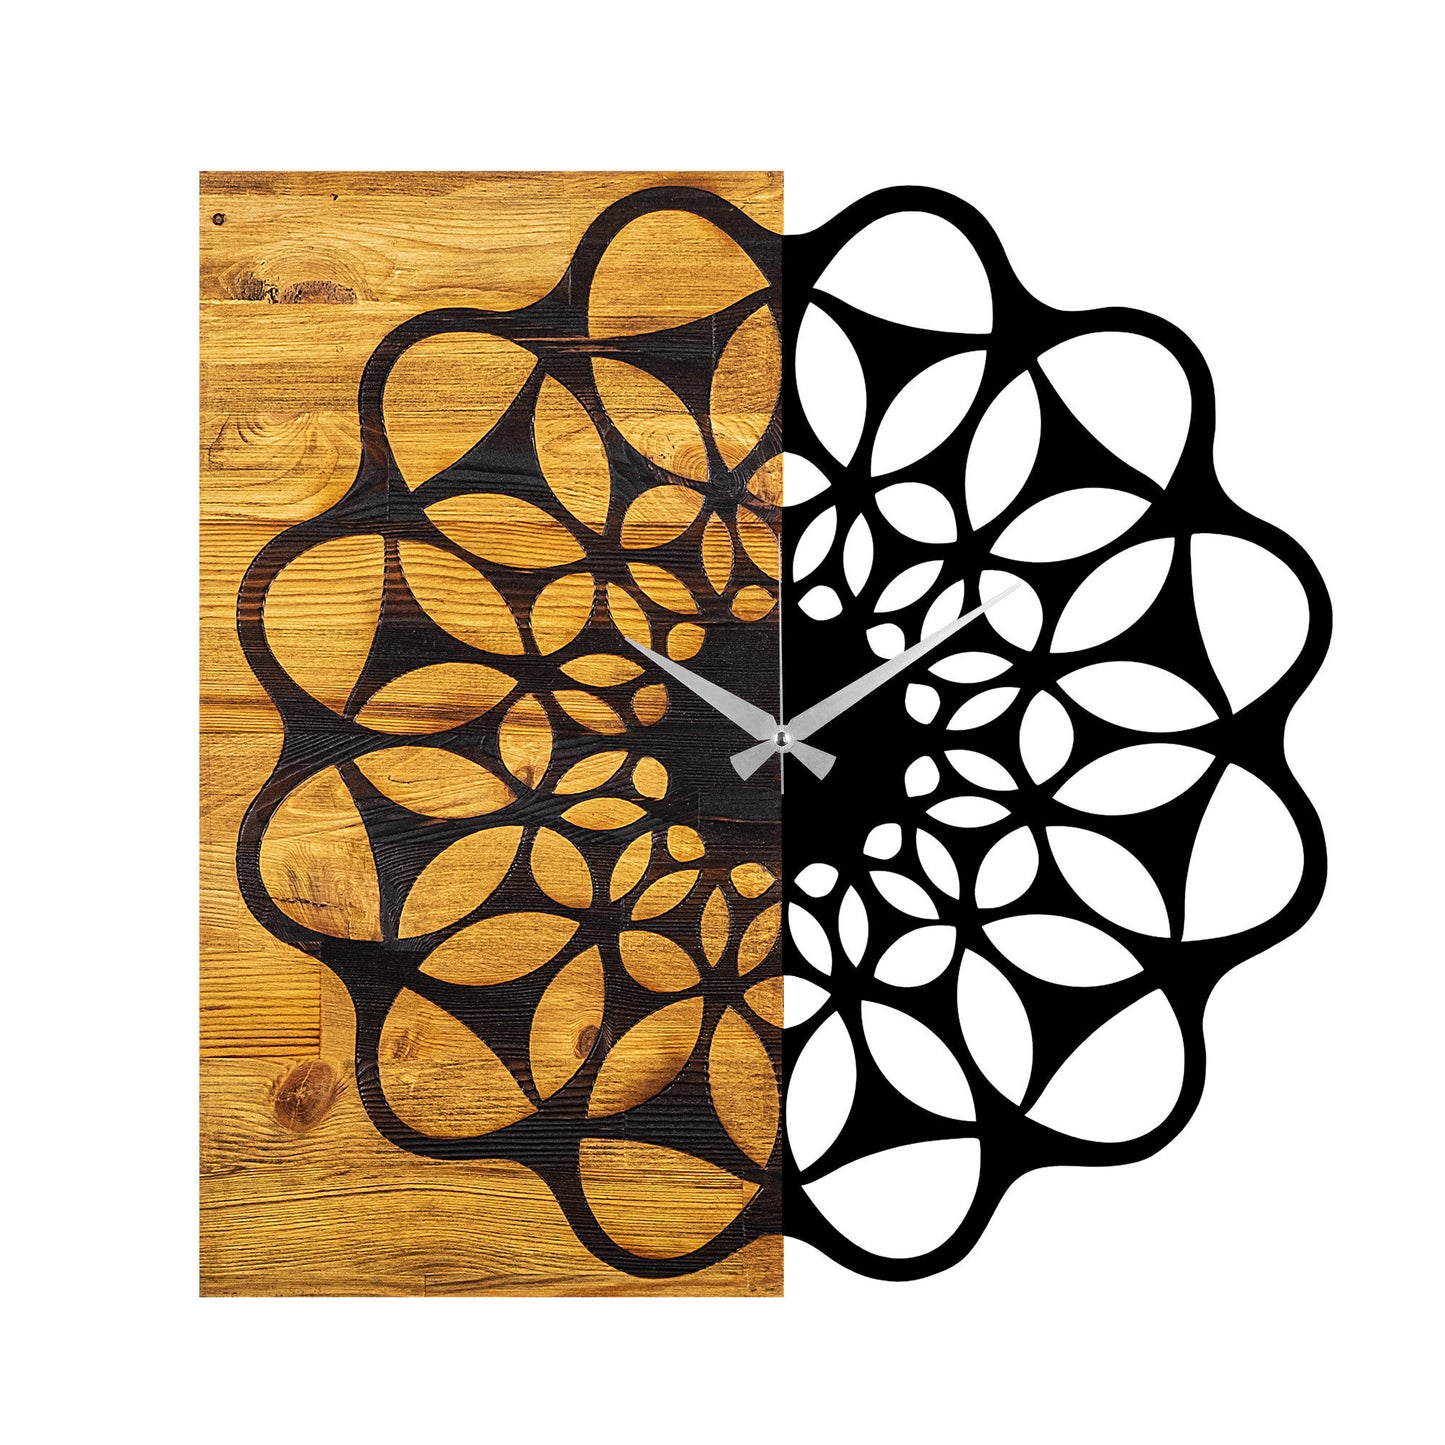 Wooden Clock 23 - Decorative Wooden Wall Clock